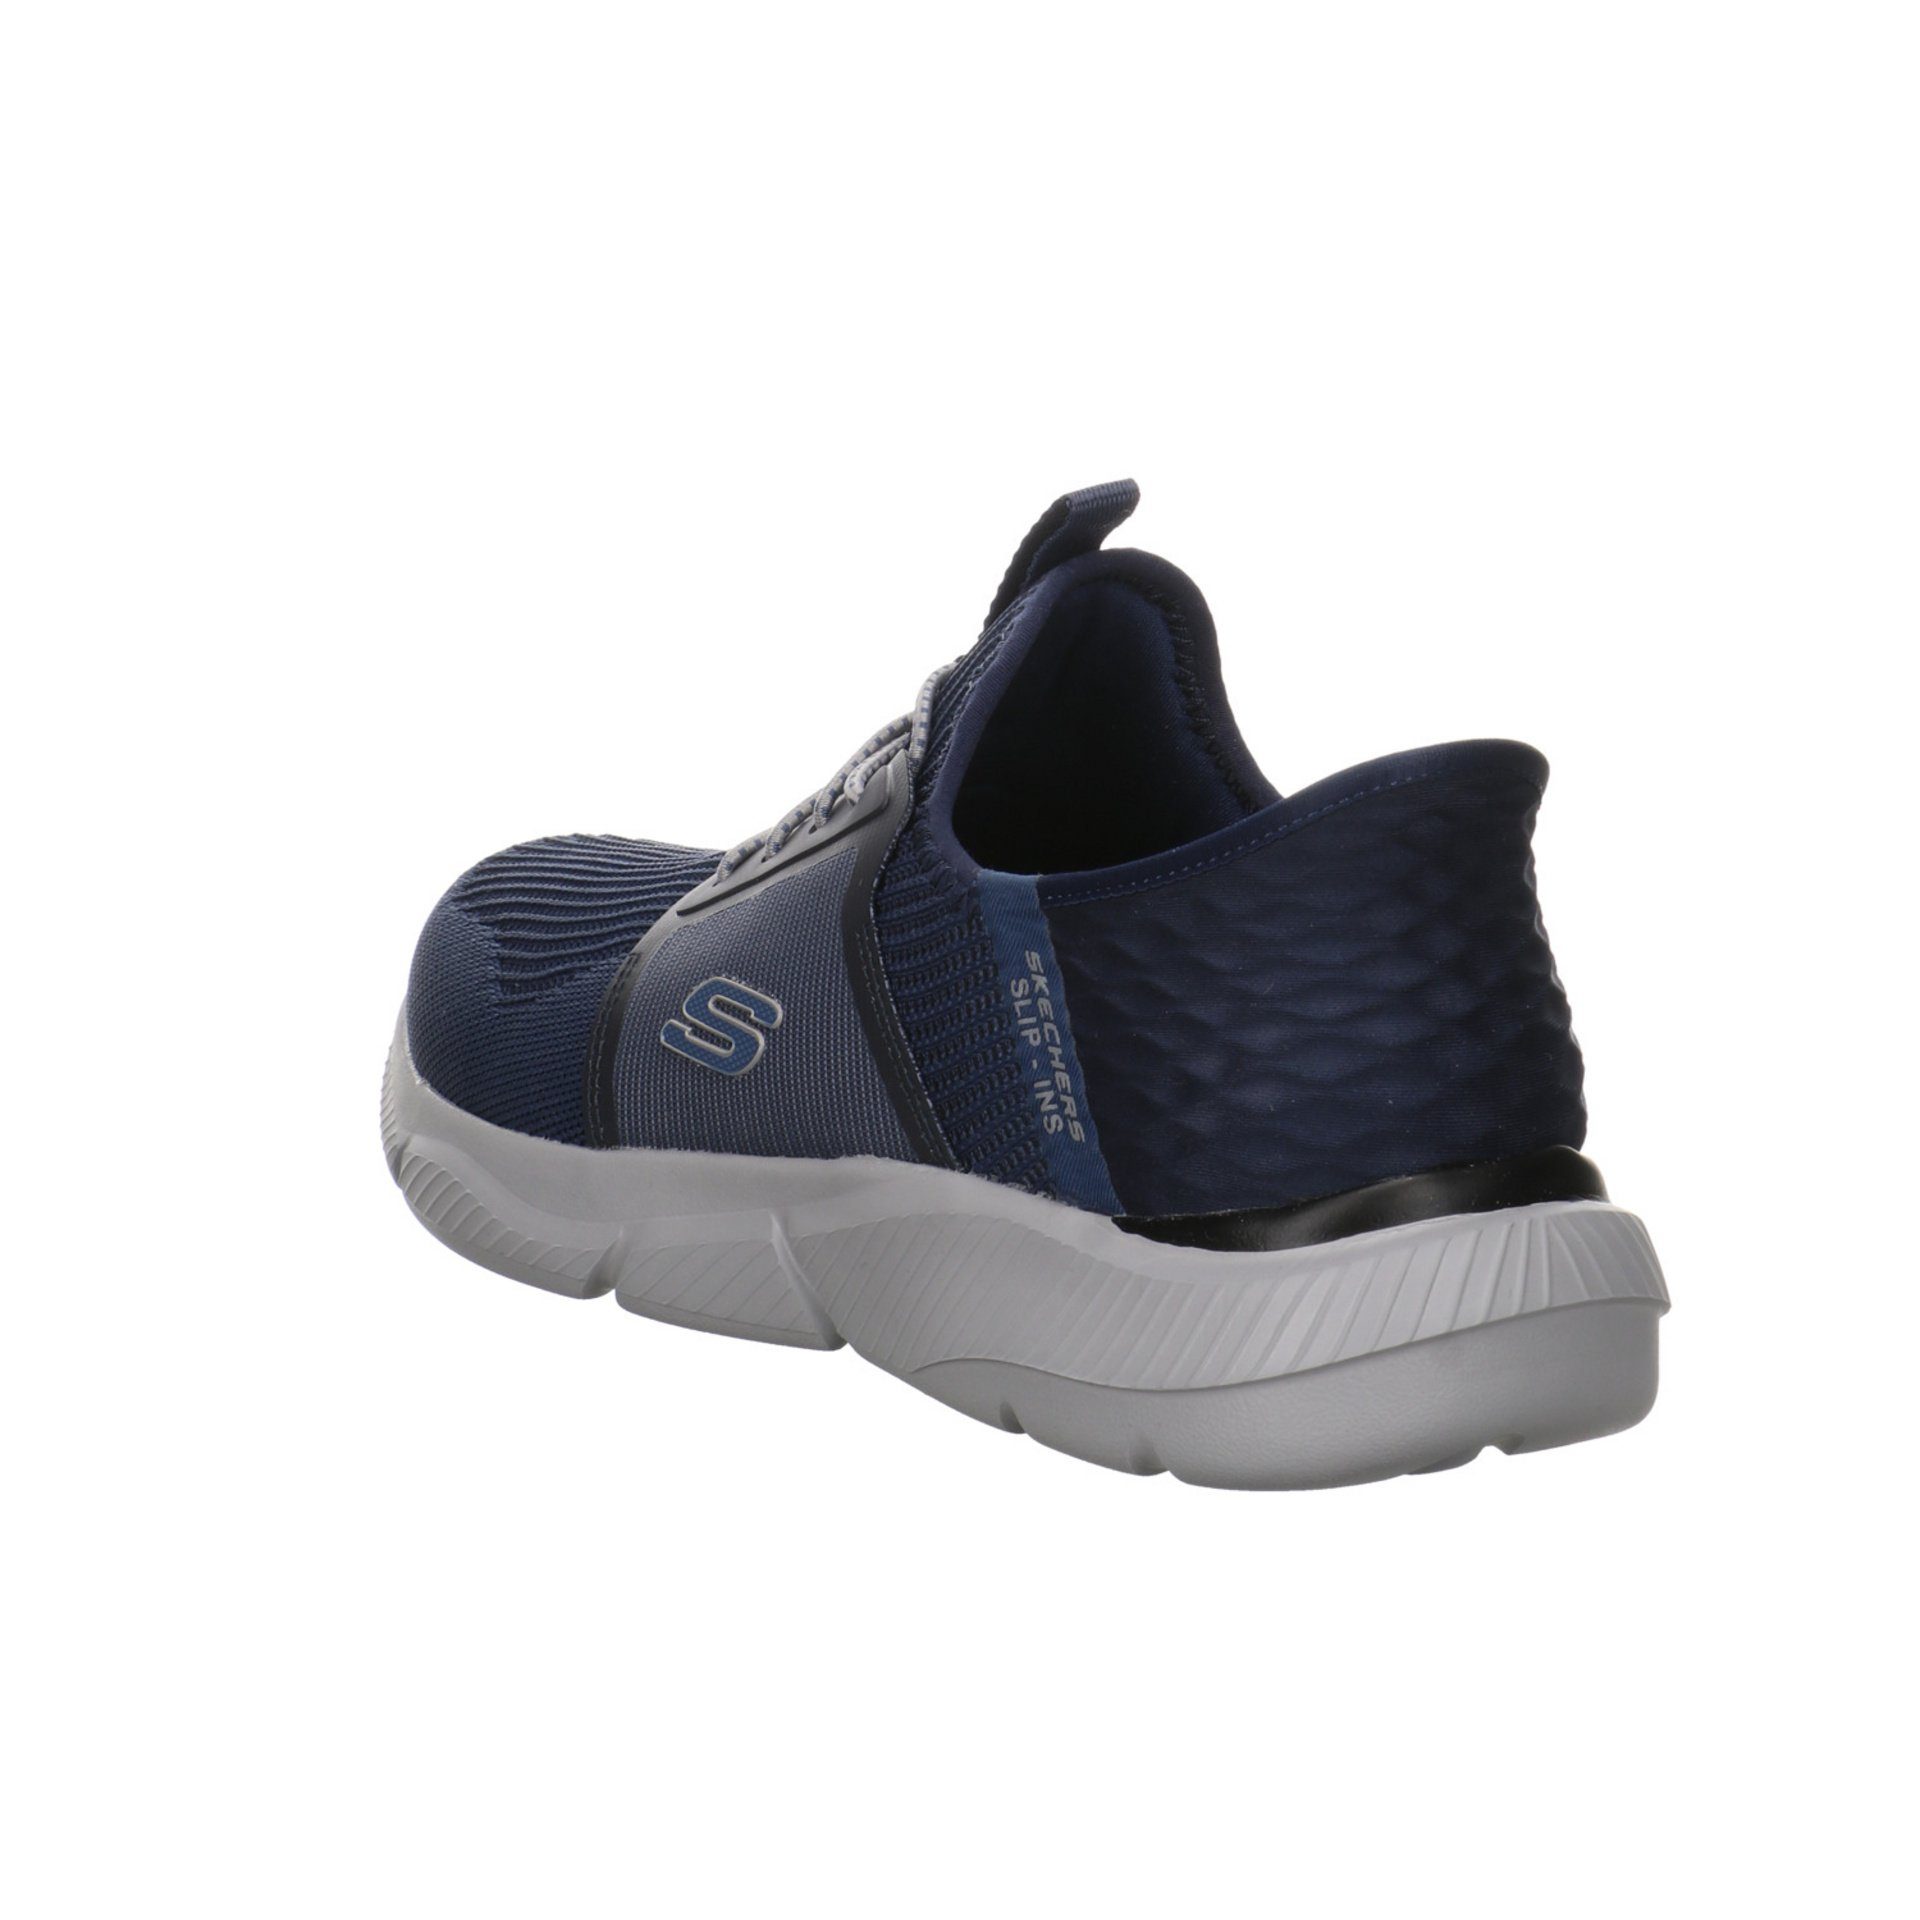 Herren Slipper Skechers Slip-On Sneaker Schuhe blau dunkel Synthetik